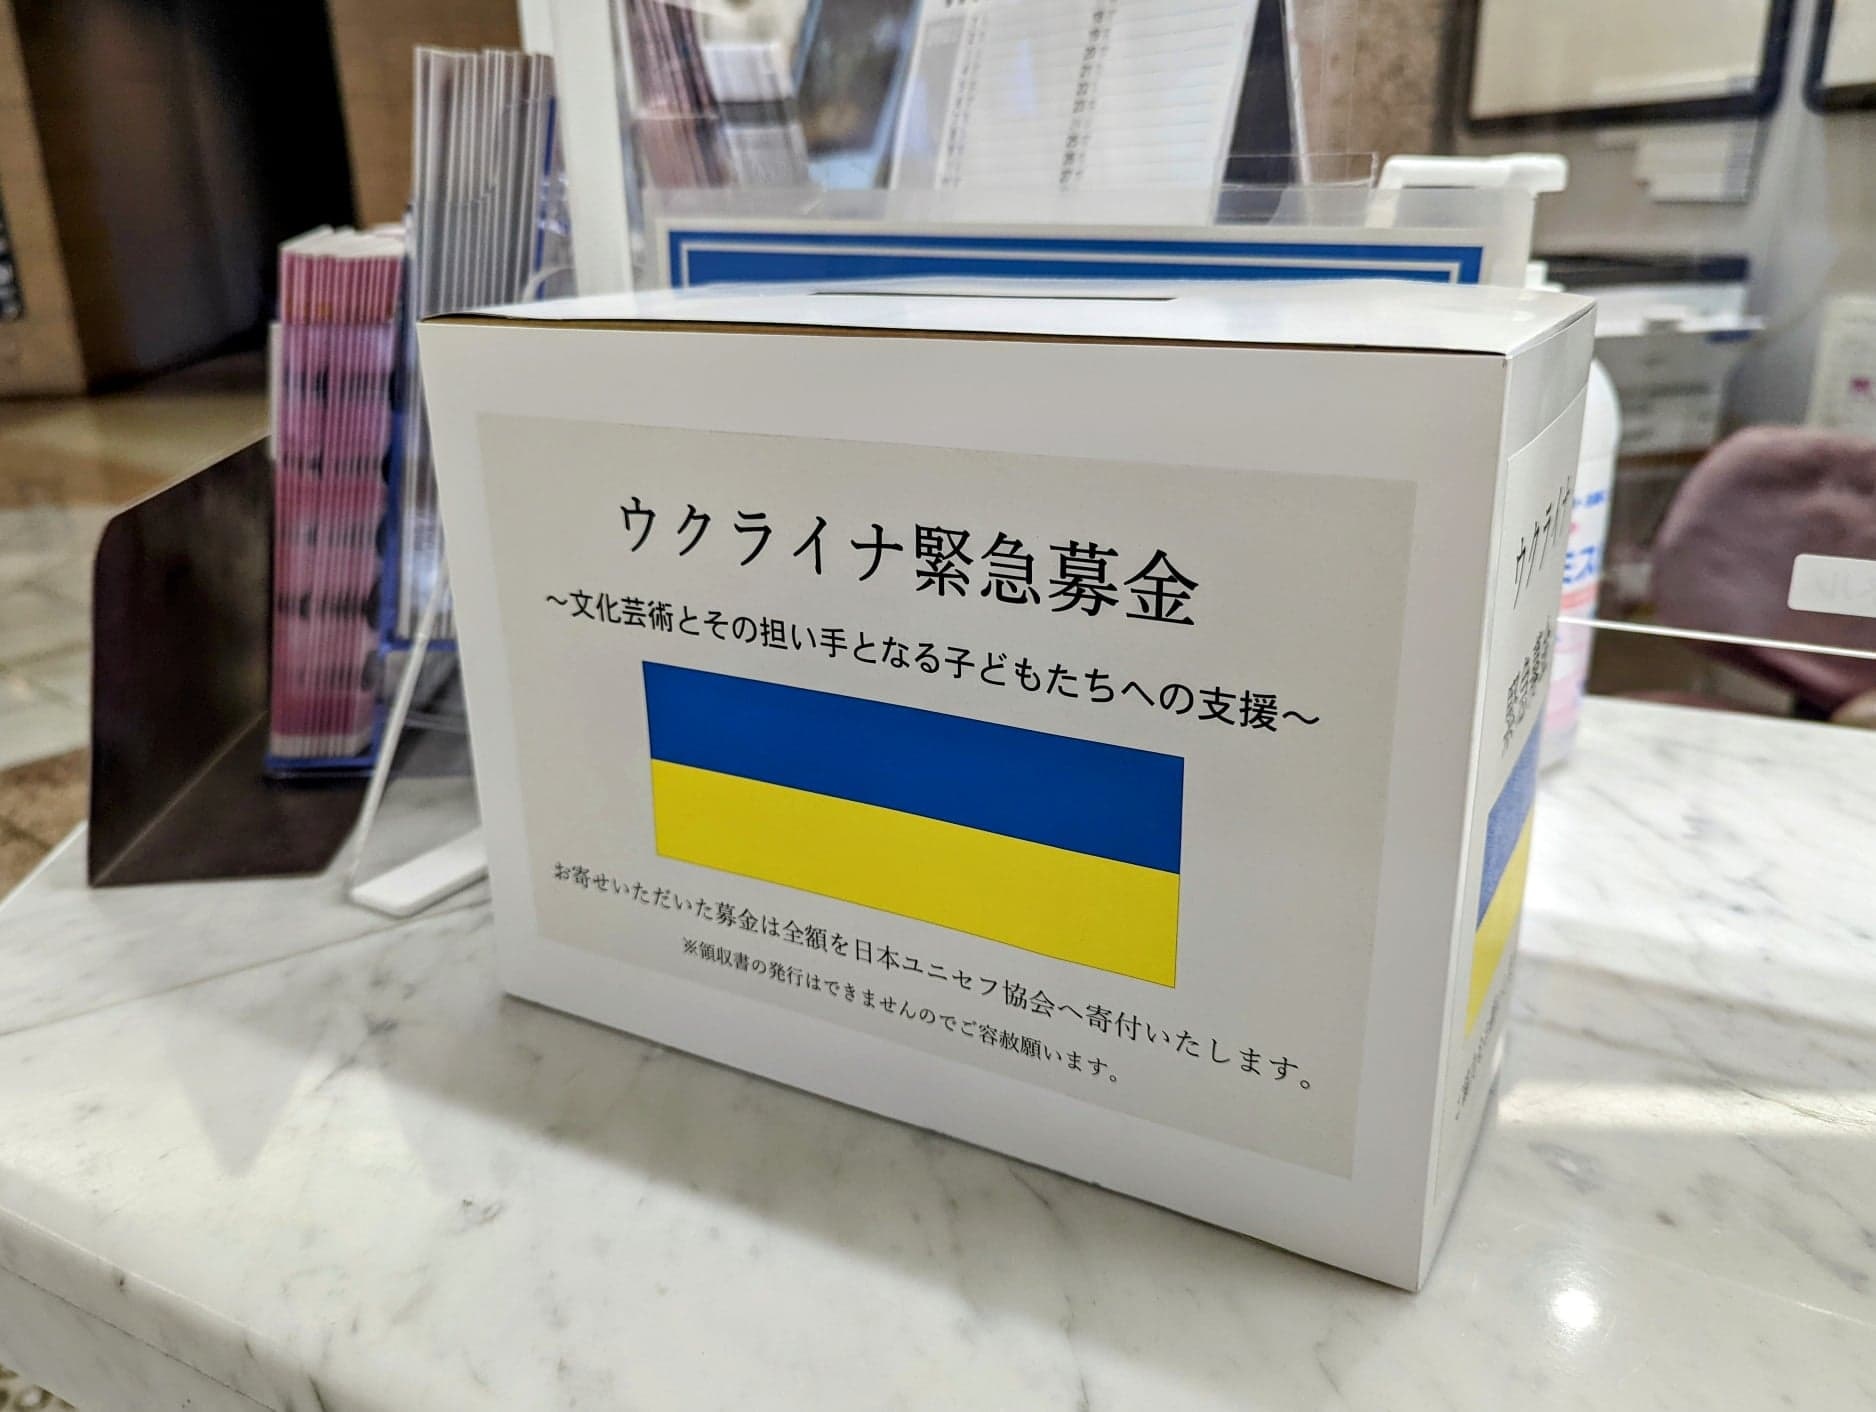 ユニセフウクライナ緊急募金の募金箱